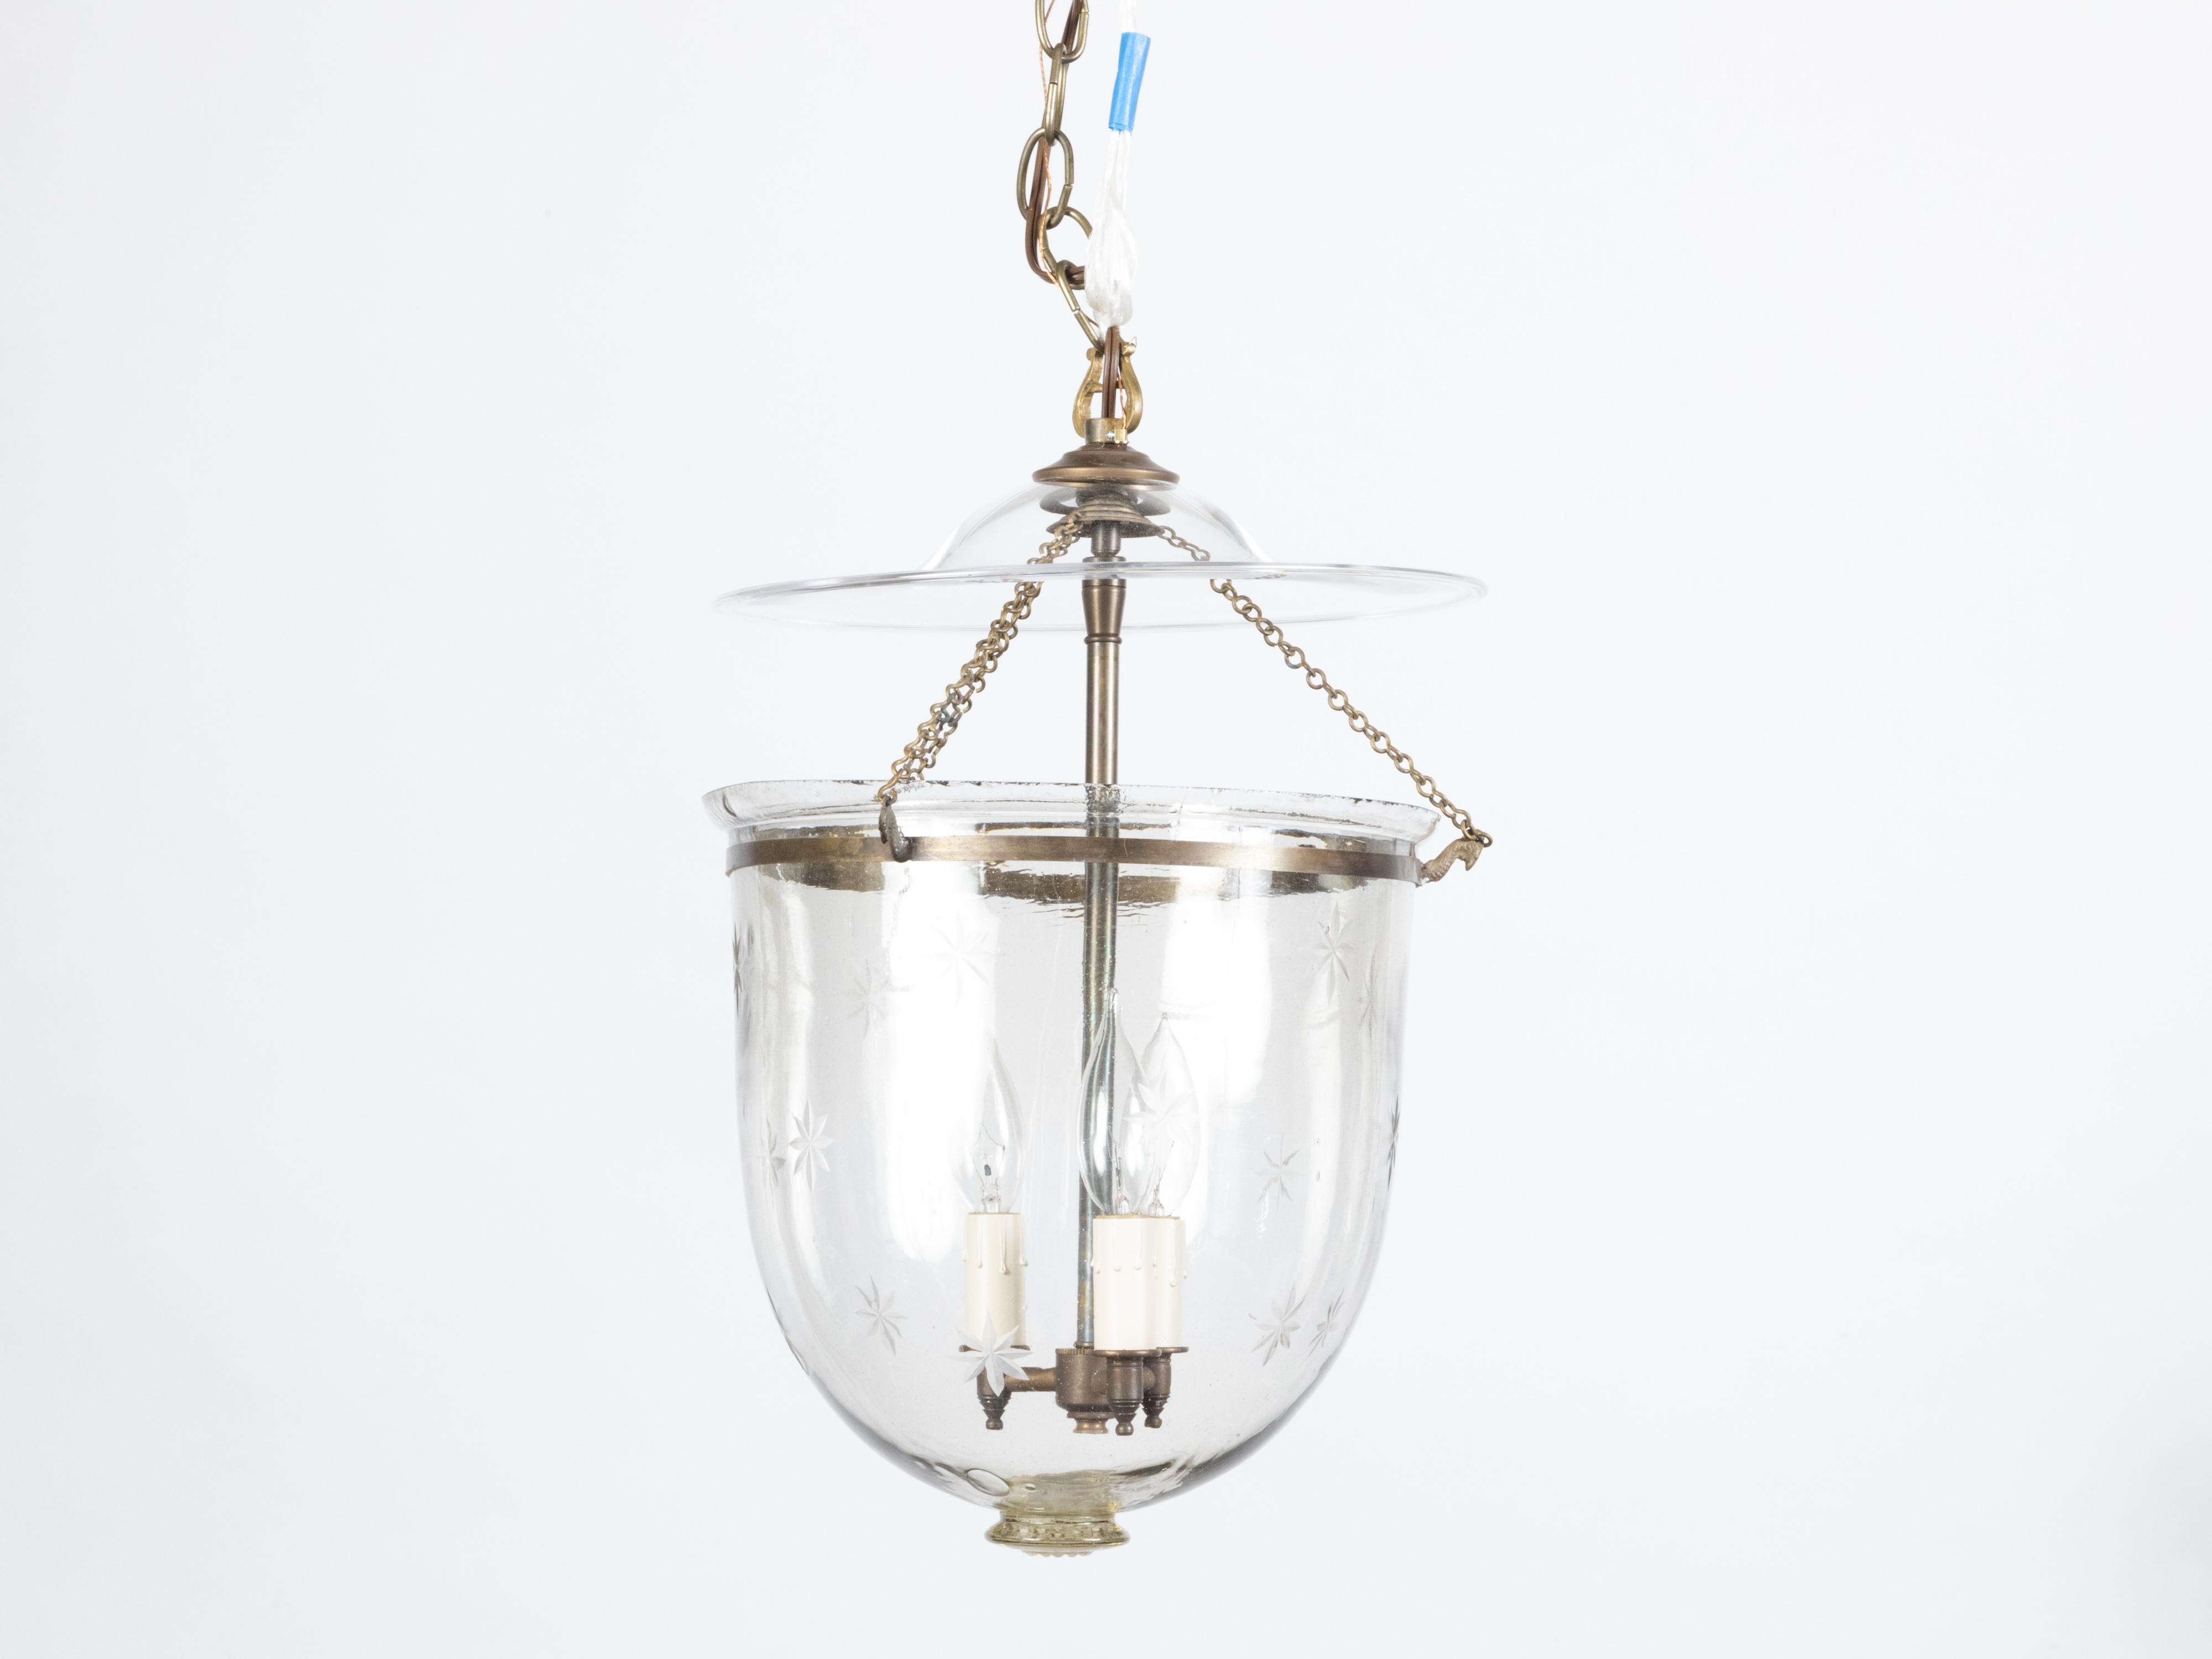 Un luminaire anglais en forme de cloche du début du 20e siècle, avec trois lumières et des étoiles gravées. Créé en Angleterre au tournant du siècle, ce luminaire en forme de cloche présente un corps en verre orné de discrets motifs étoilés gravés,